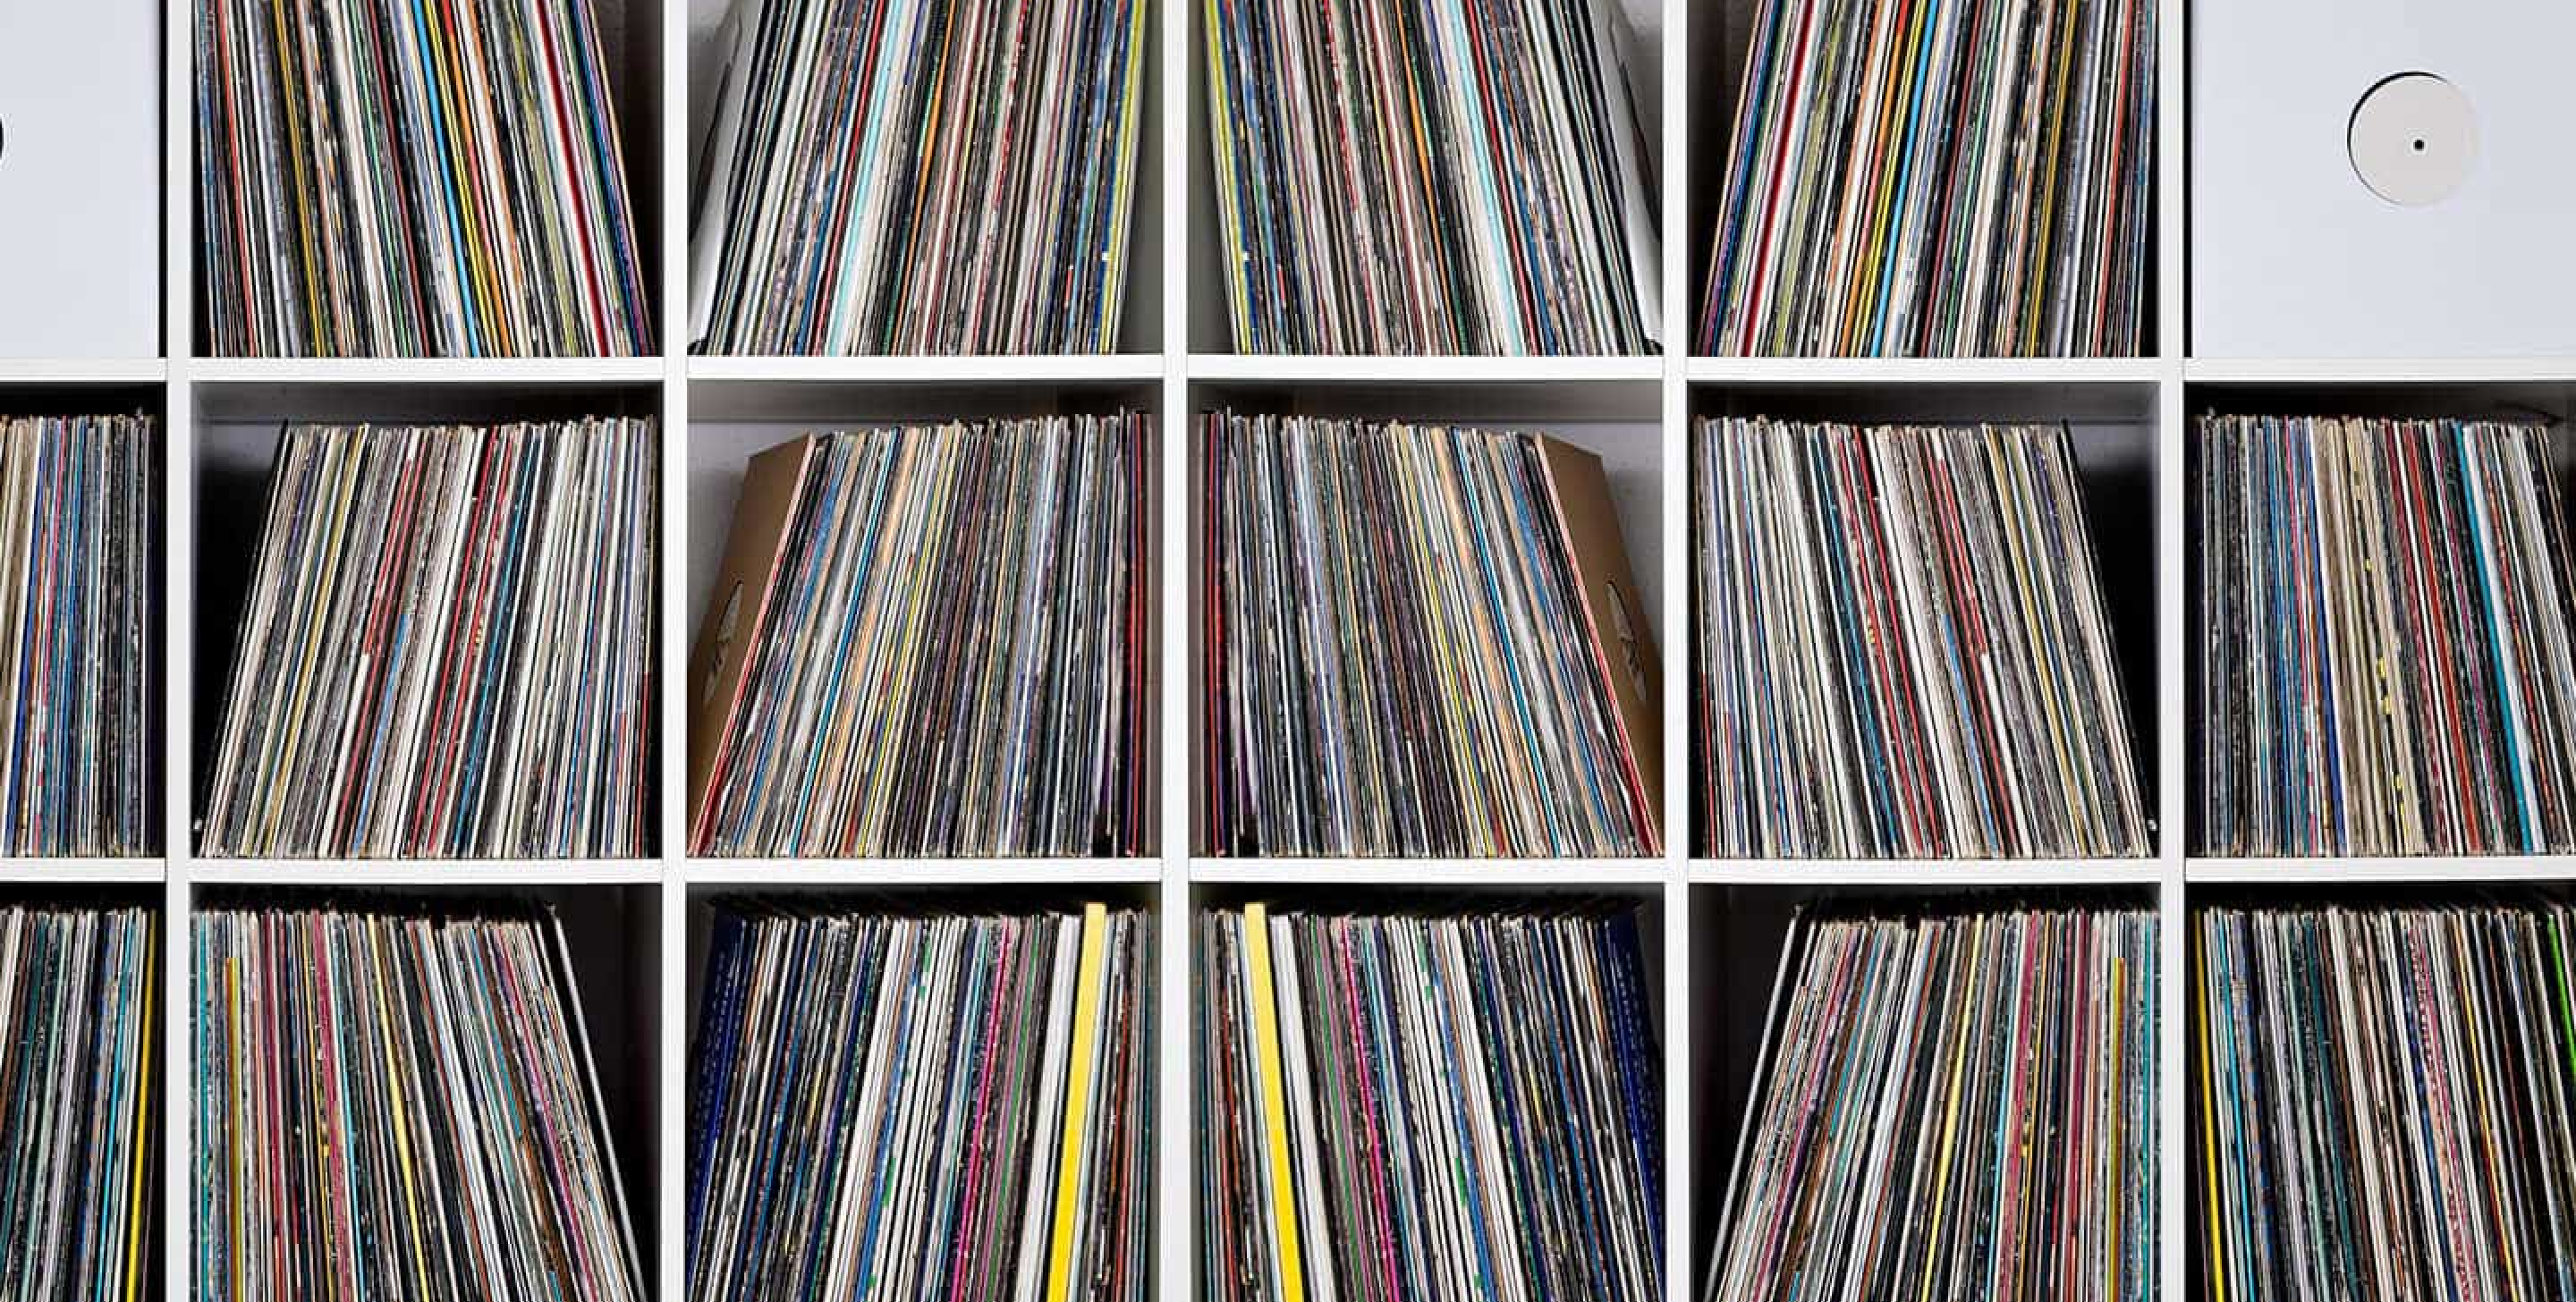 Records on a Shelf